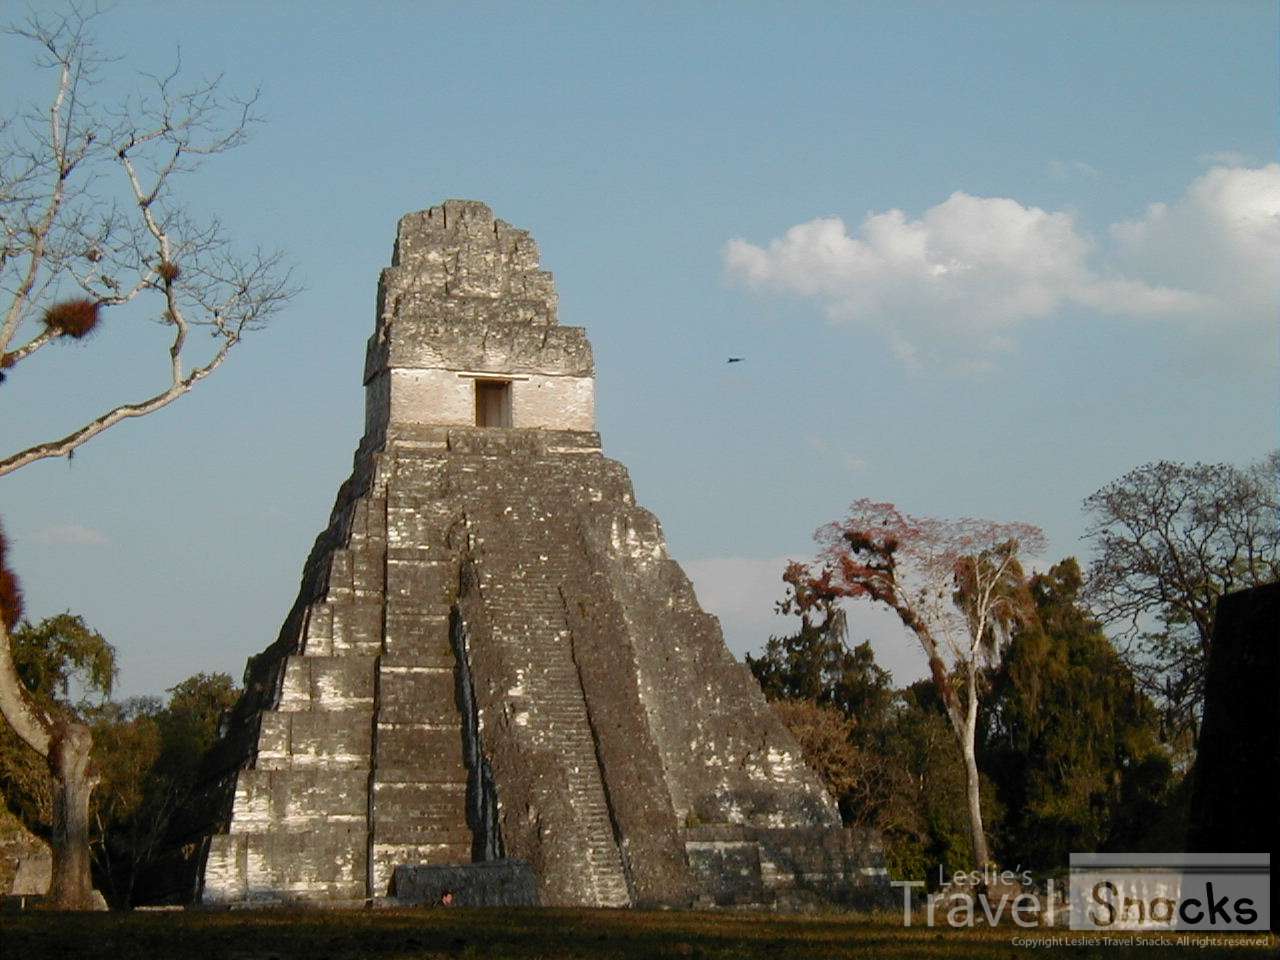 Wow, Tikal was impressive.